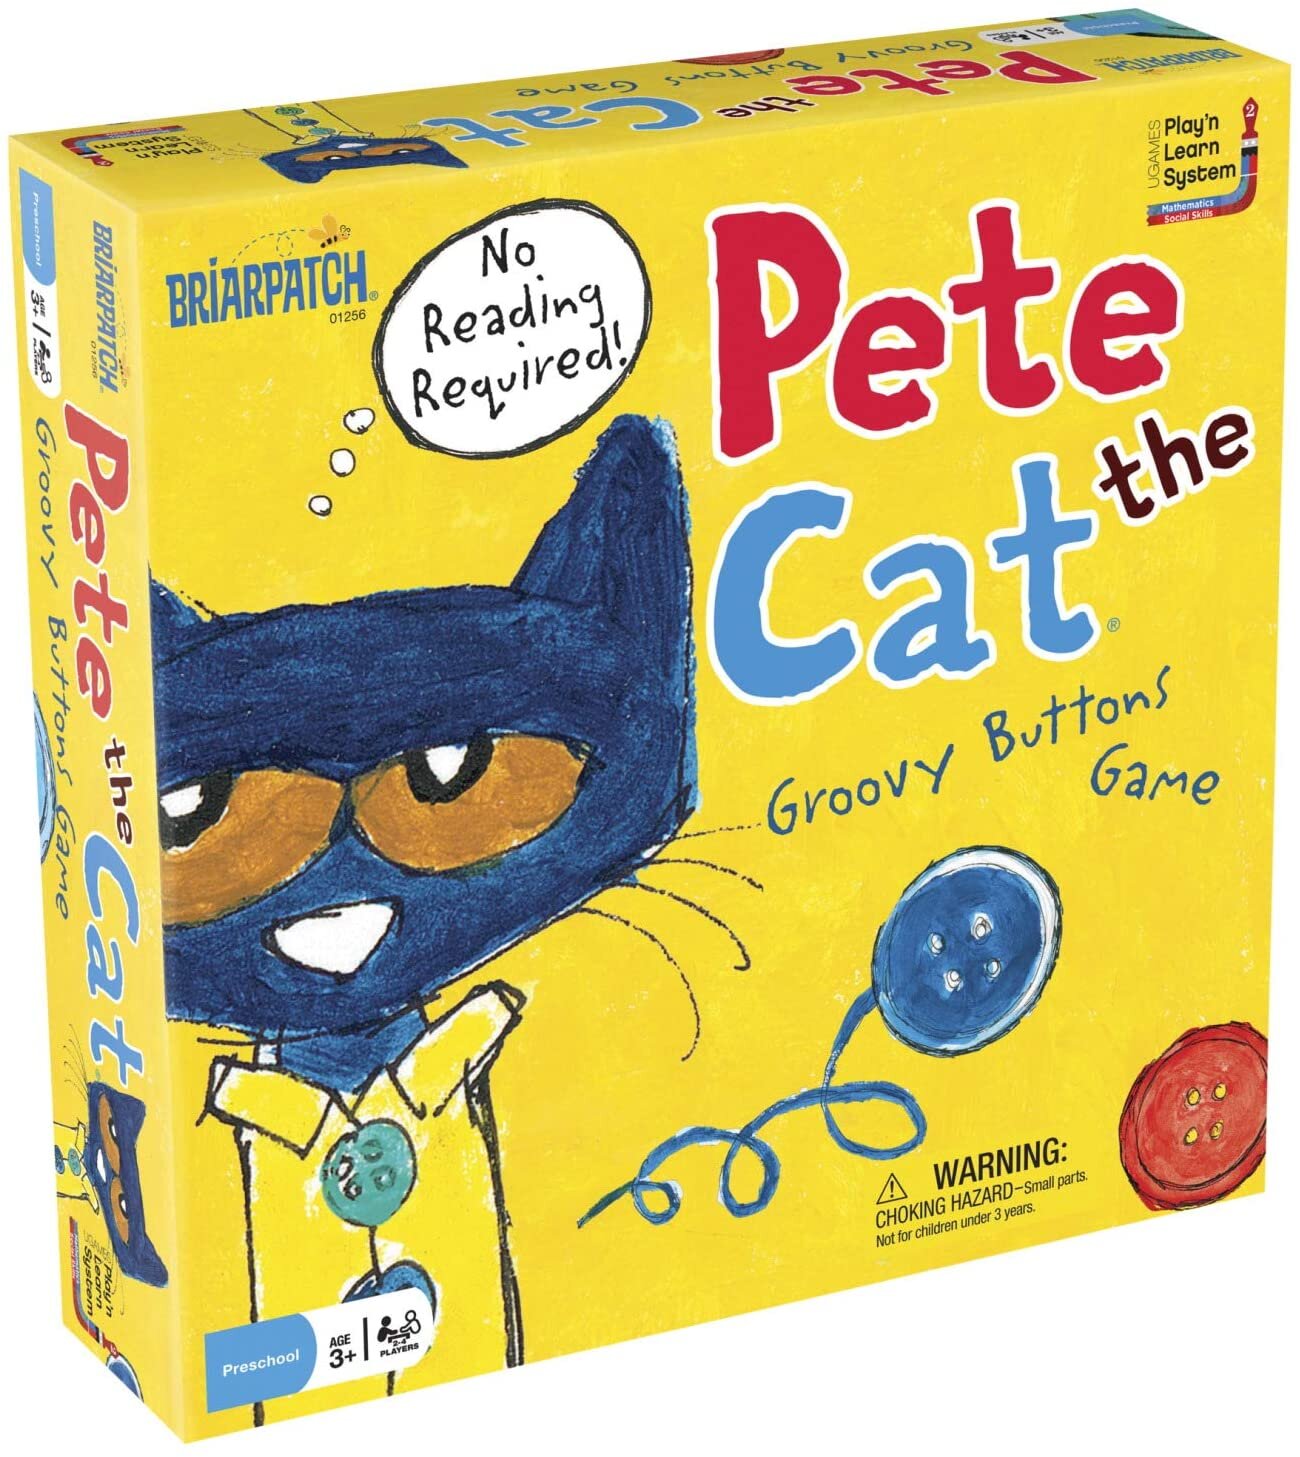 Pete The Cat